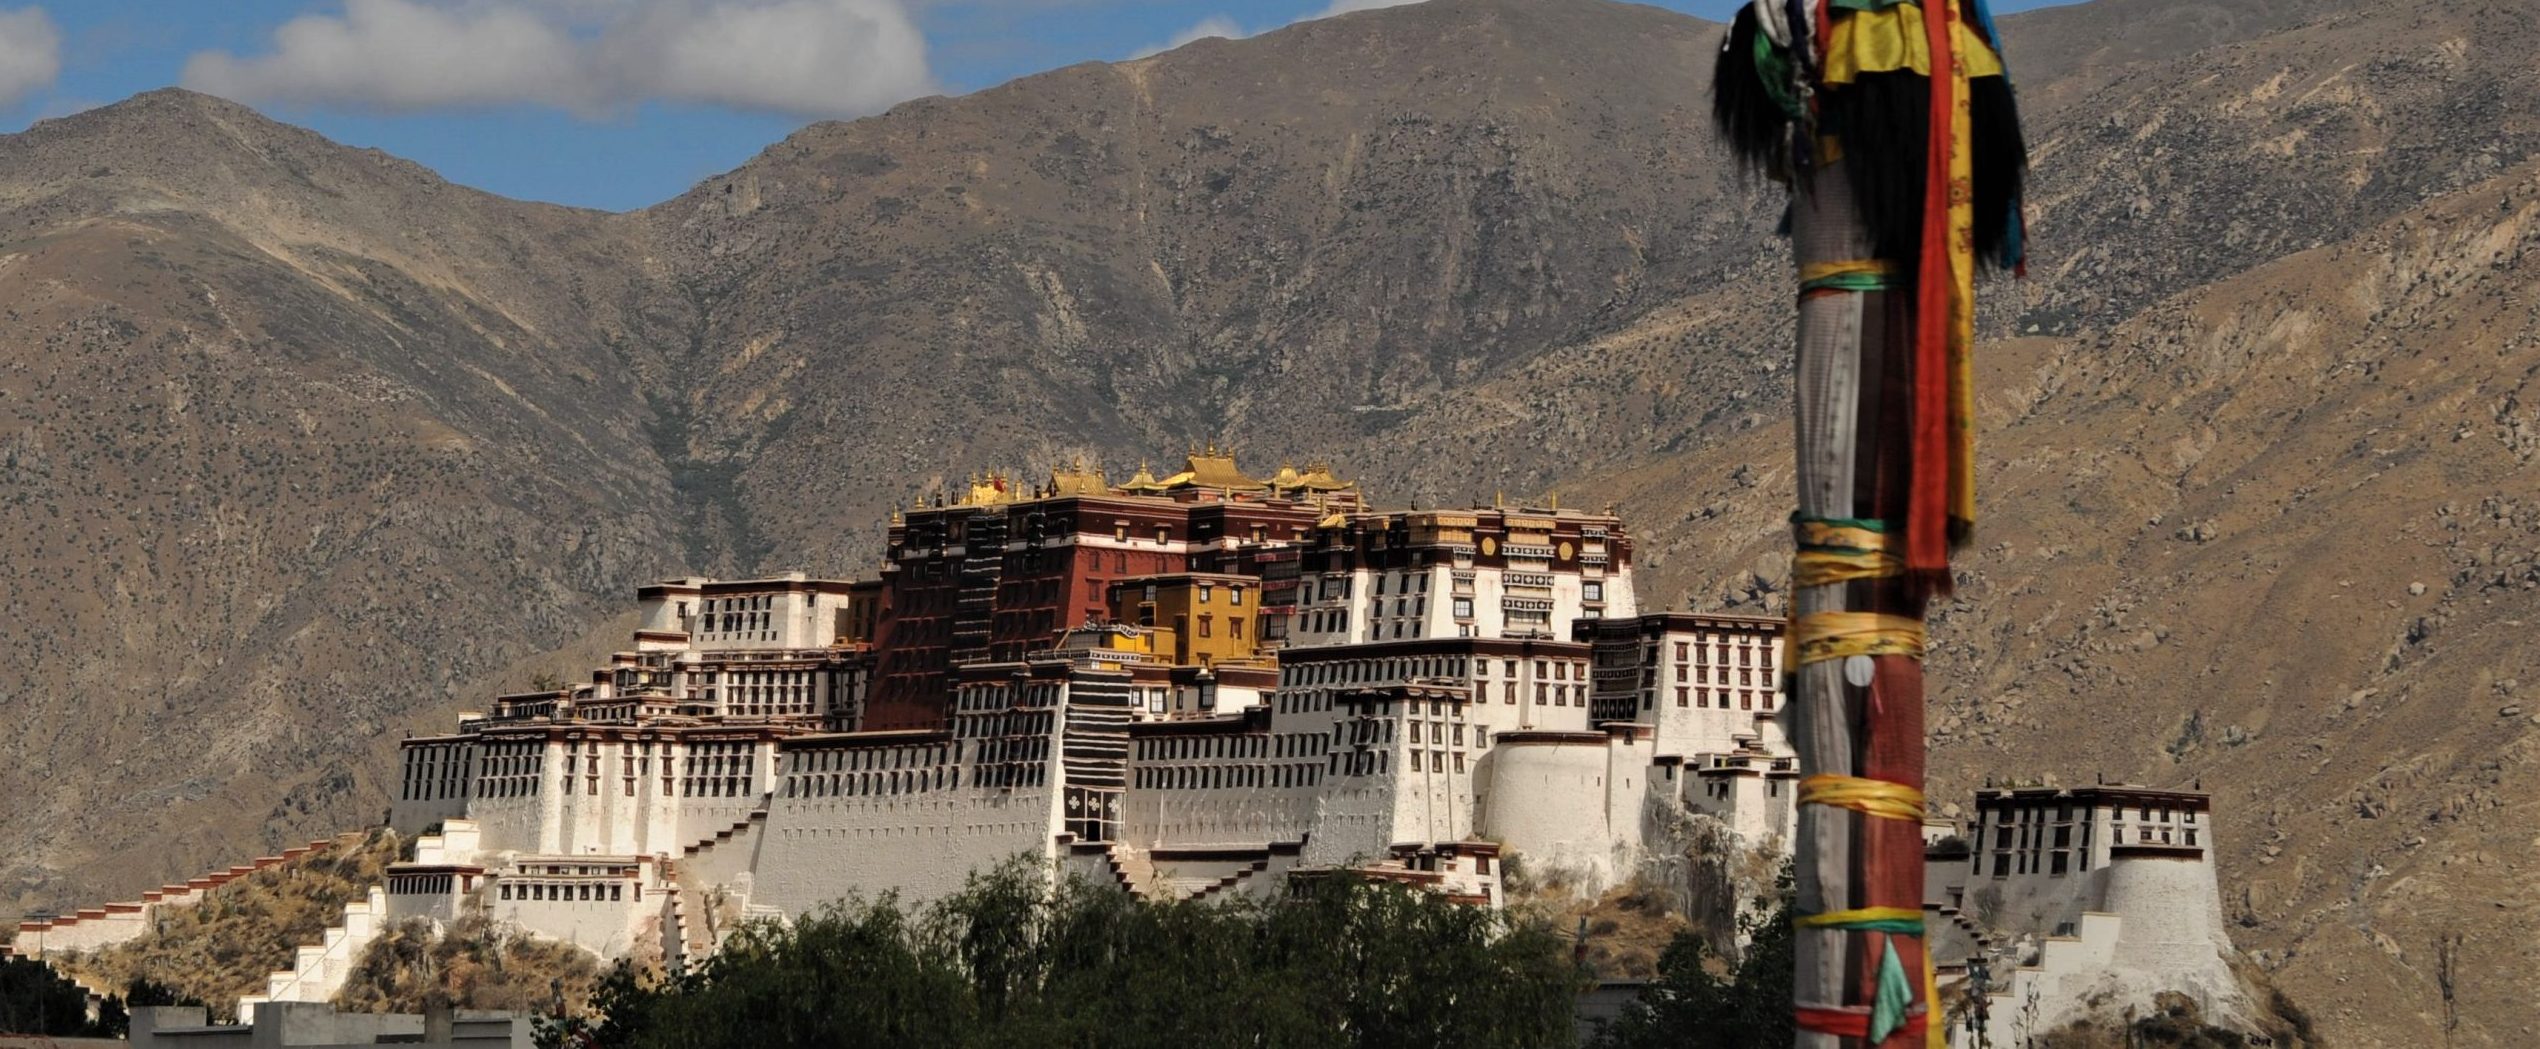 Siete días en el Tíbet